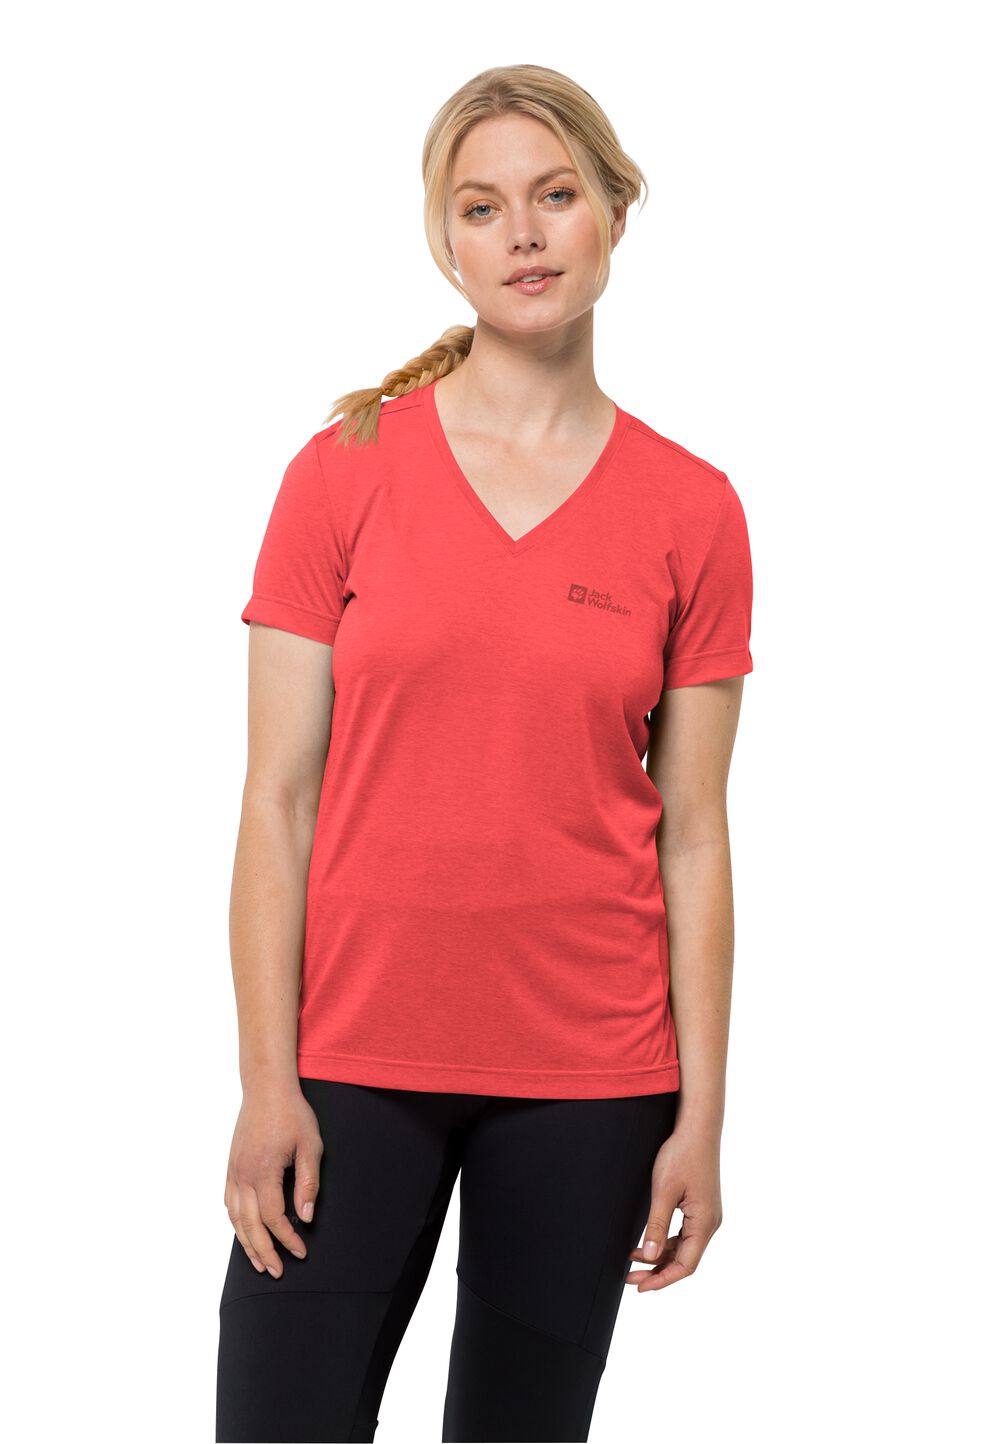 Jack Wolfskin Funktionsshirt Damen Crosstrail T-Shirt Women S rot vibrant red von Jack Wolfskin